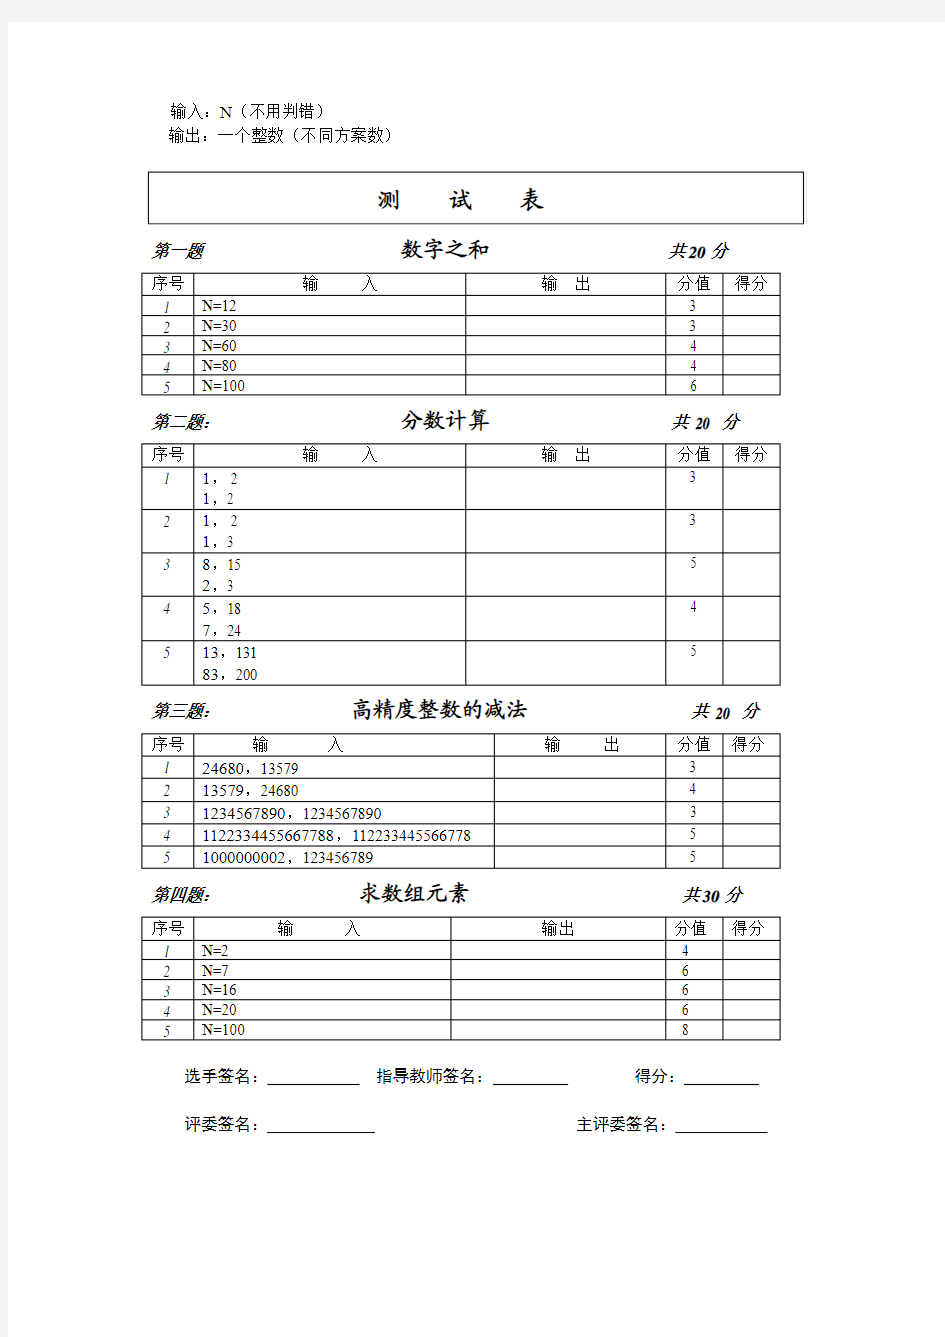 ‘江苏省小学生信息学(计算机)奥林匹克)竞赛复赛题